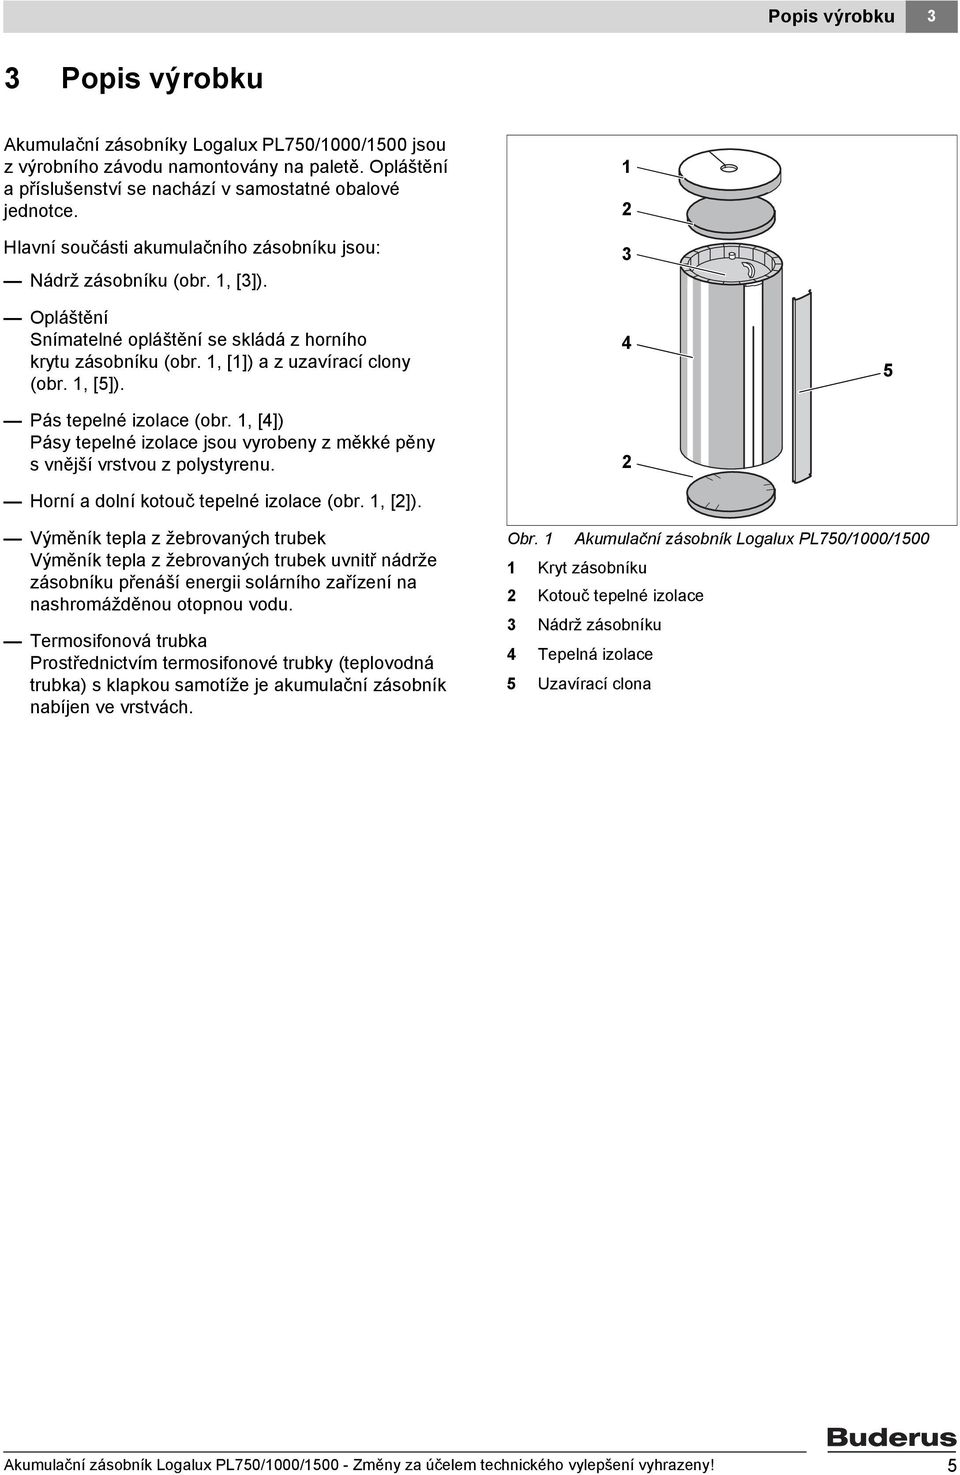 Pás tepelné izolace (obr. 1, [4]) Pásy tepelné izolace jsou vyrobeny z měkké pěny svnější vrstvou z polystyrenu. Horní a dolní kotouč tepelné izolace (obr. 1, [2]).